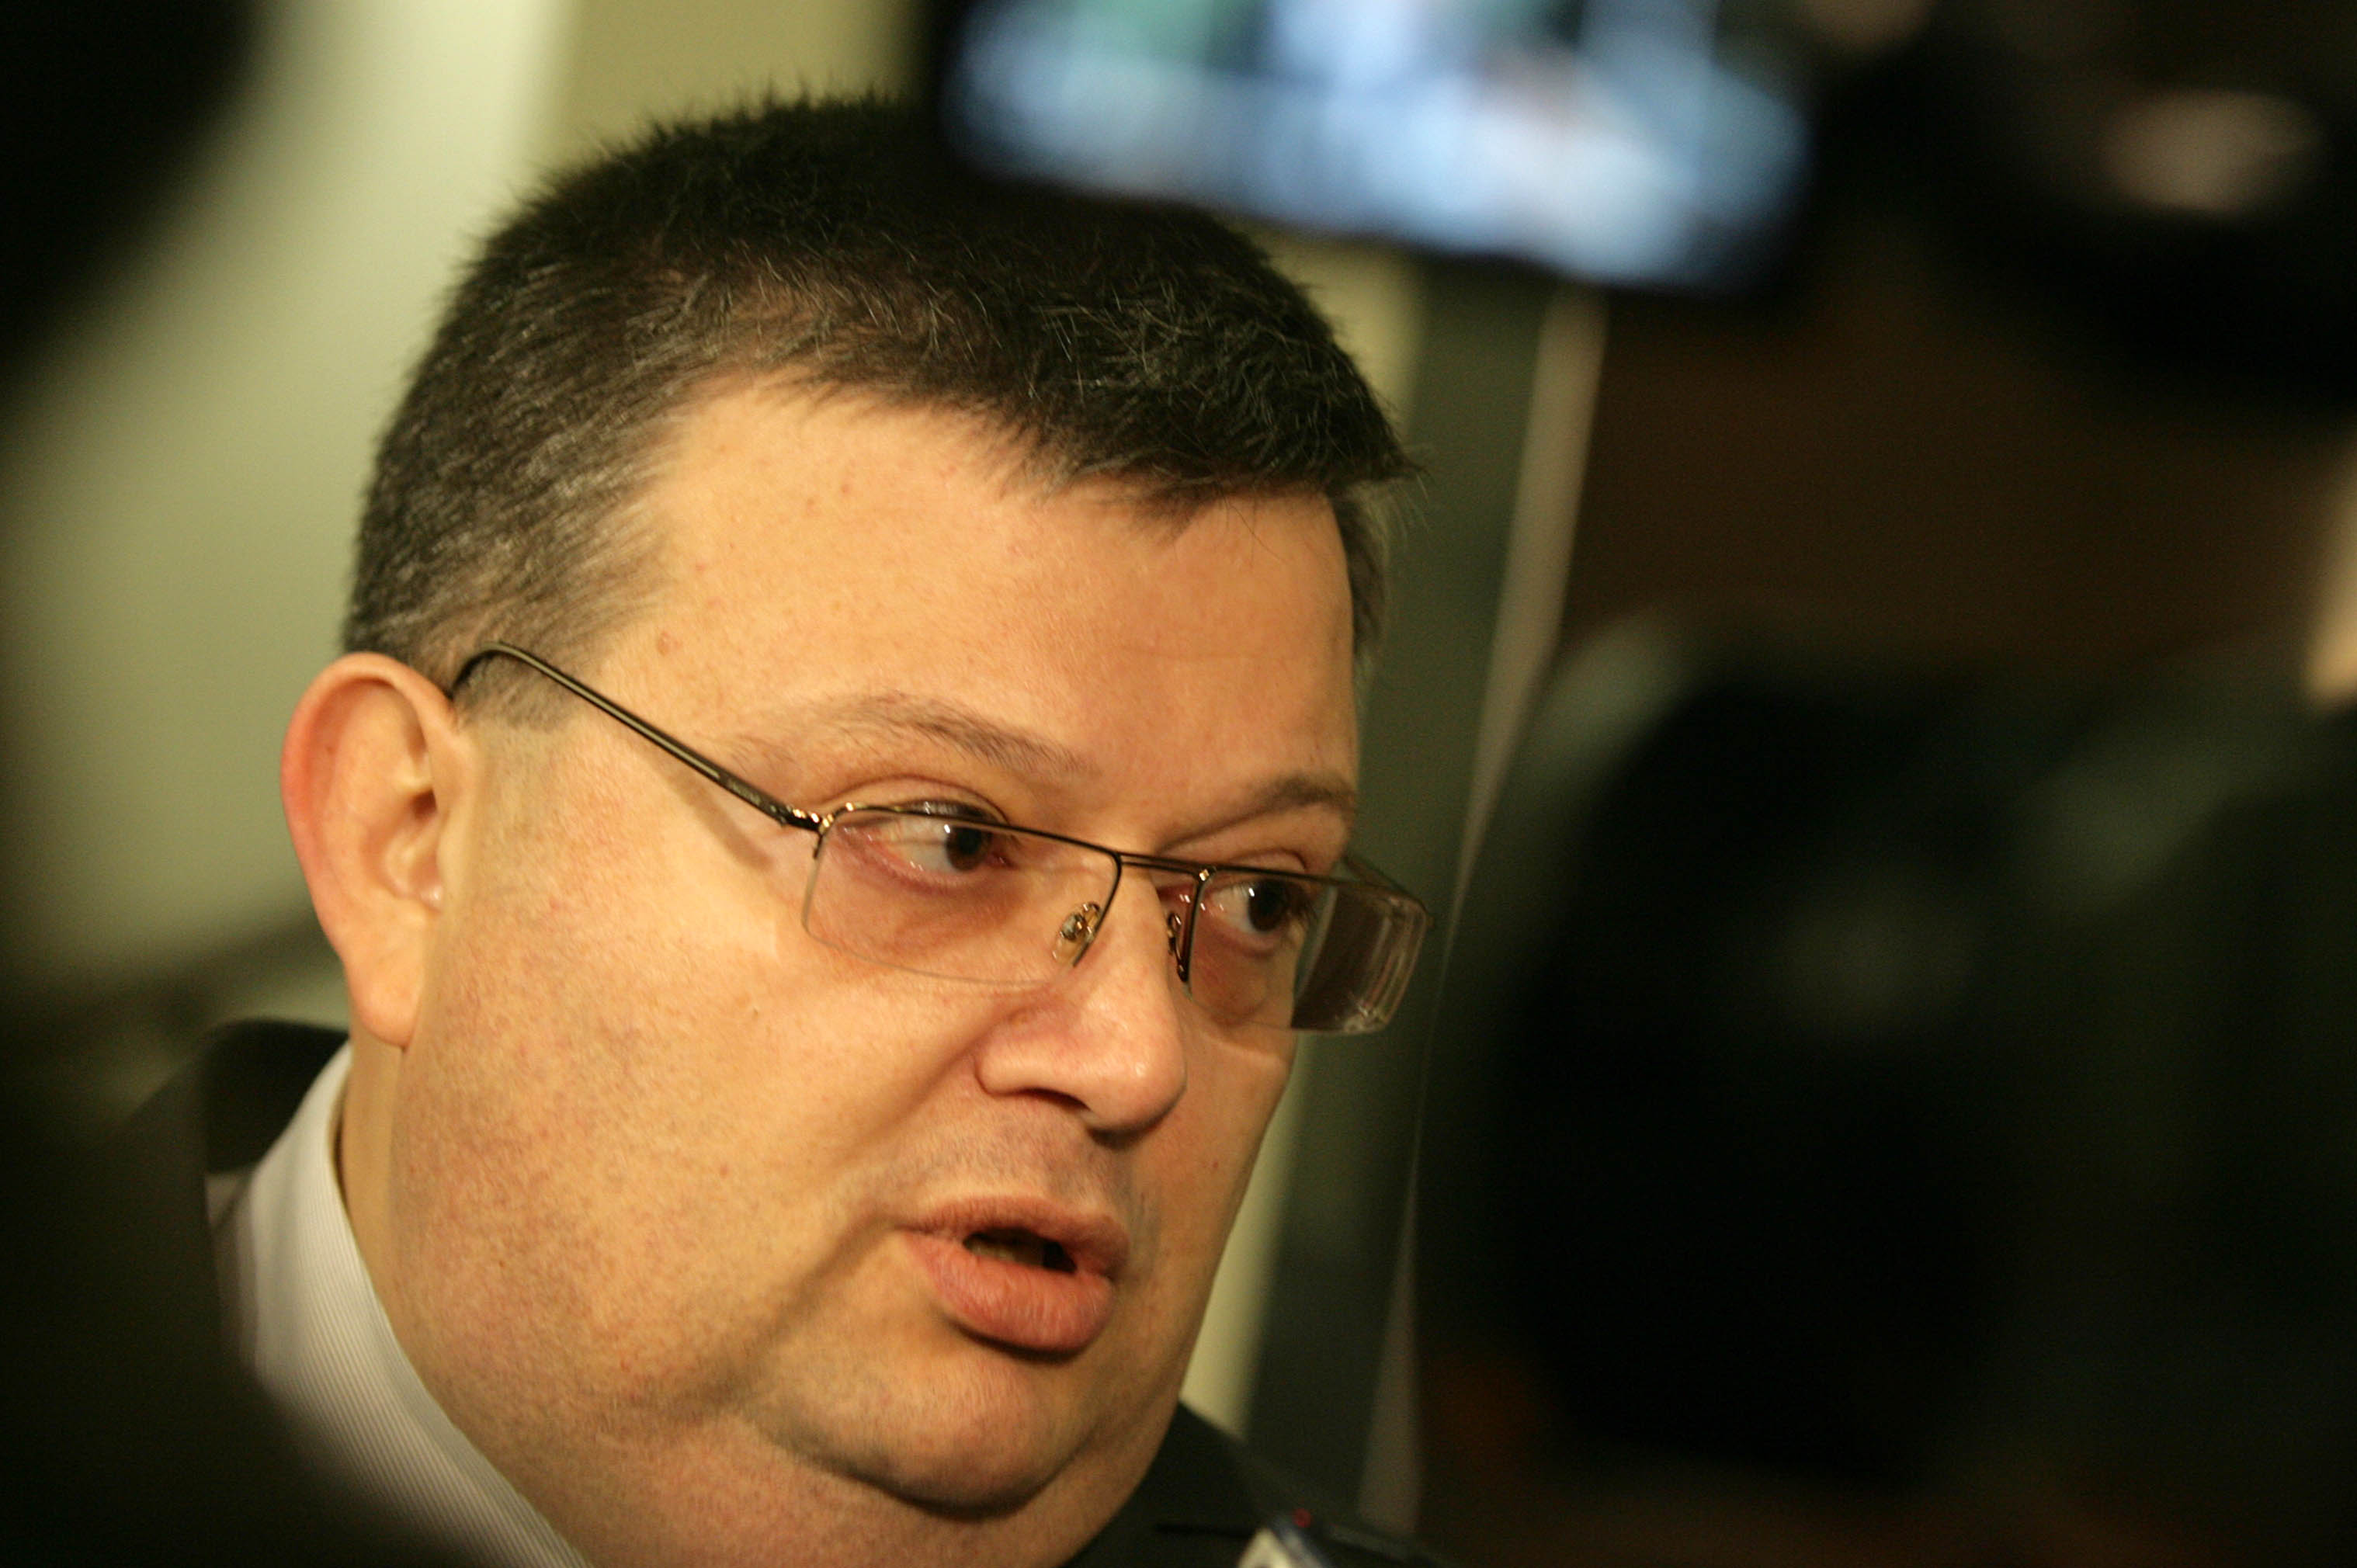 Според Сотир Цацаров в скандала нямало замесени, а само ”споменати” в разговор между две лица